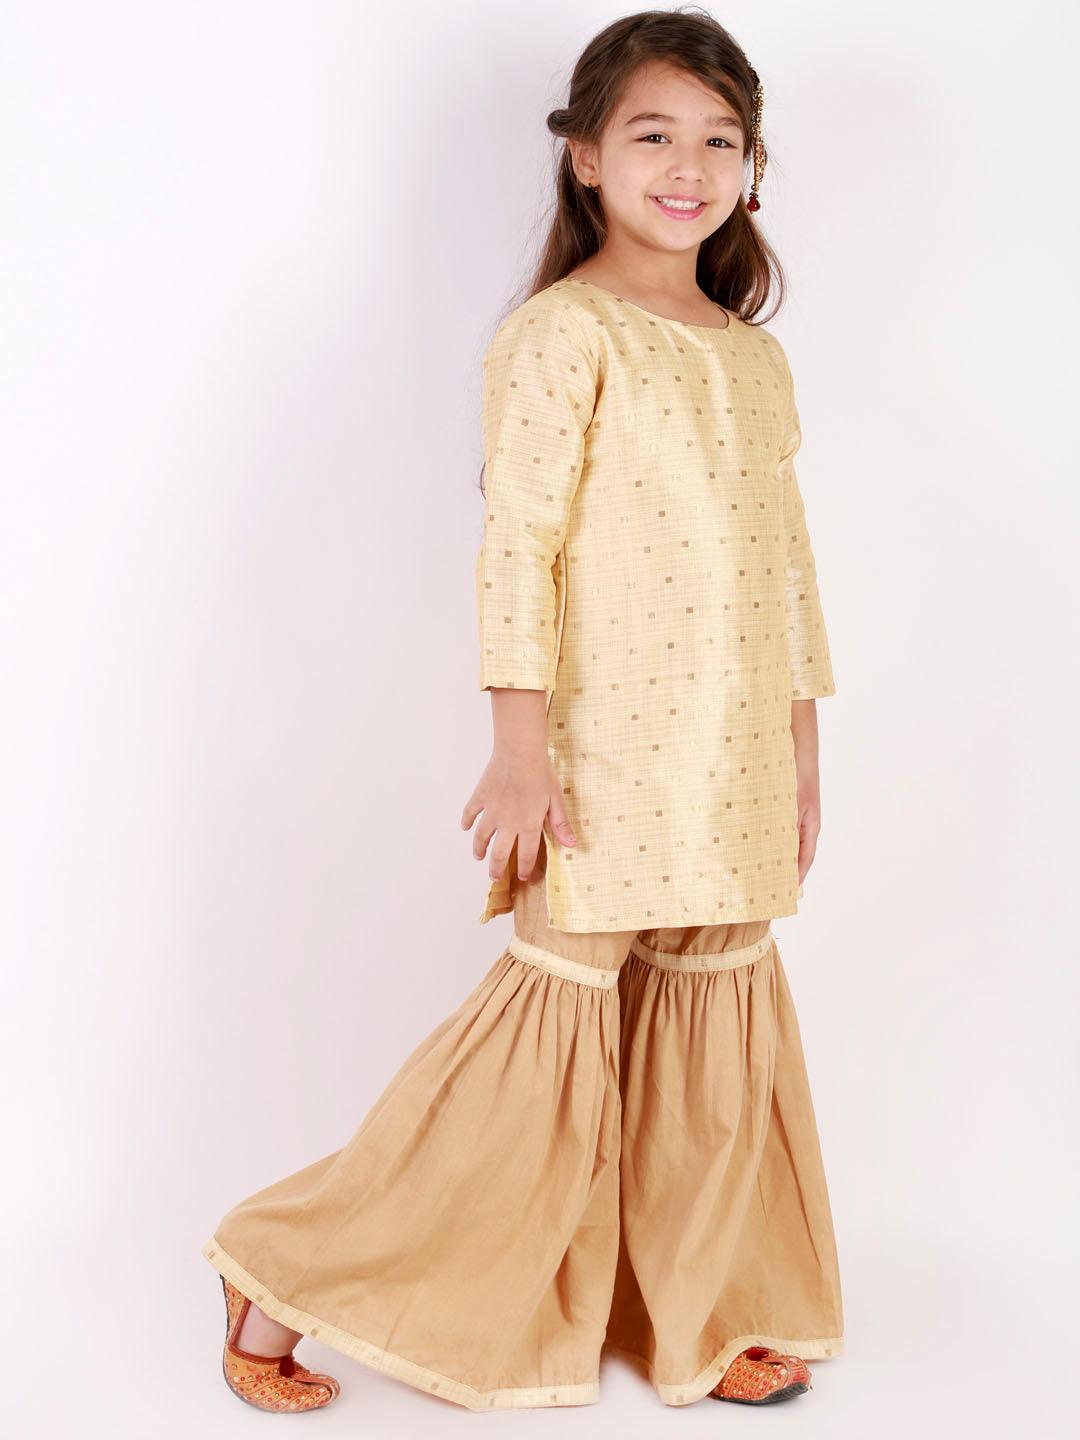 Boy's Gold Silk Blend Kurta Pyjama Set & Girl's Jacquard Kurta With Sharara Set - Vastramay - Indiakreations